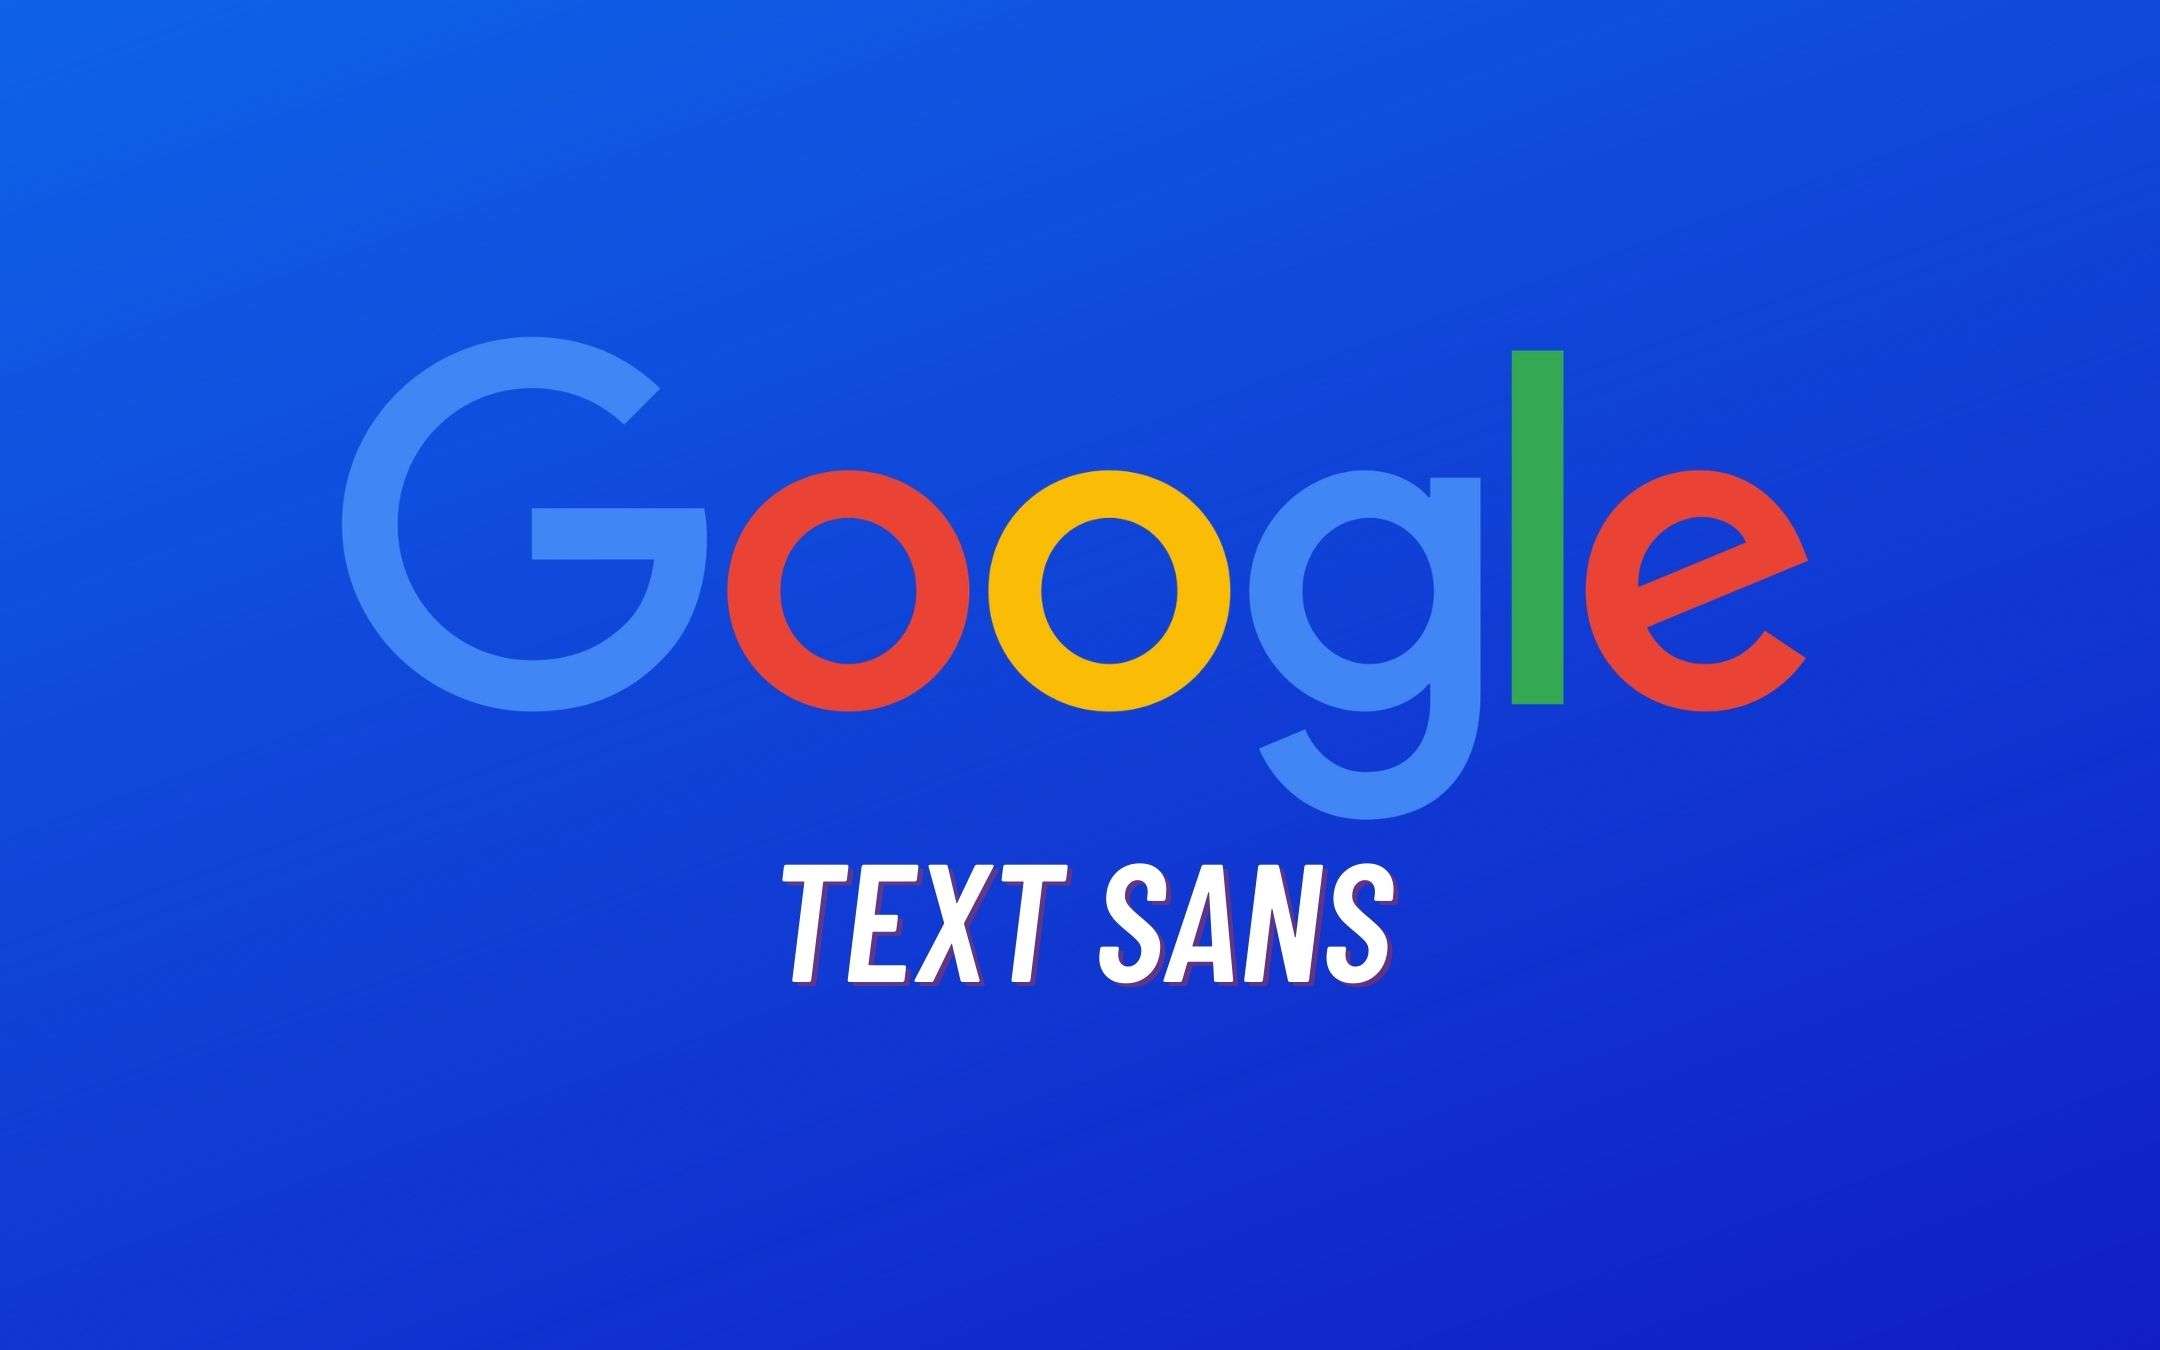 Il Google Sans Text approda sulle app dell'azienda